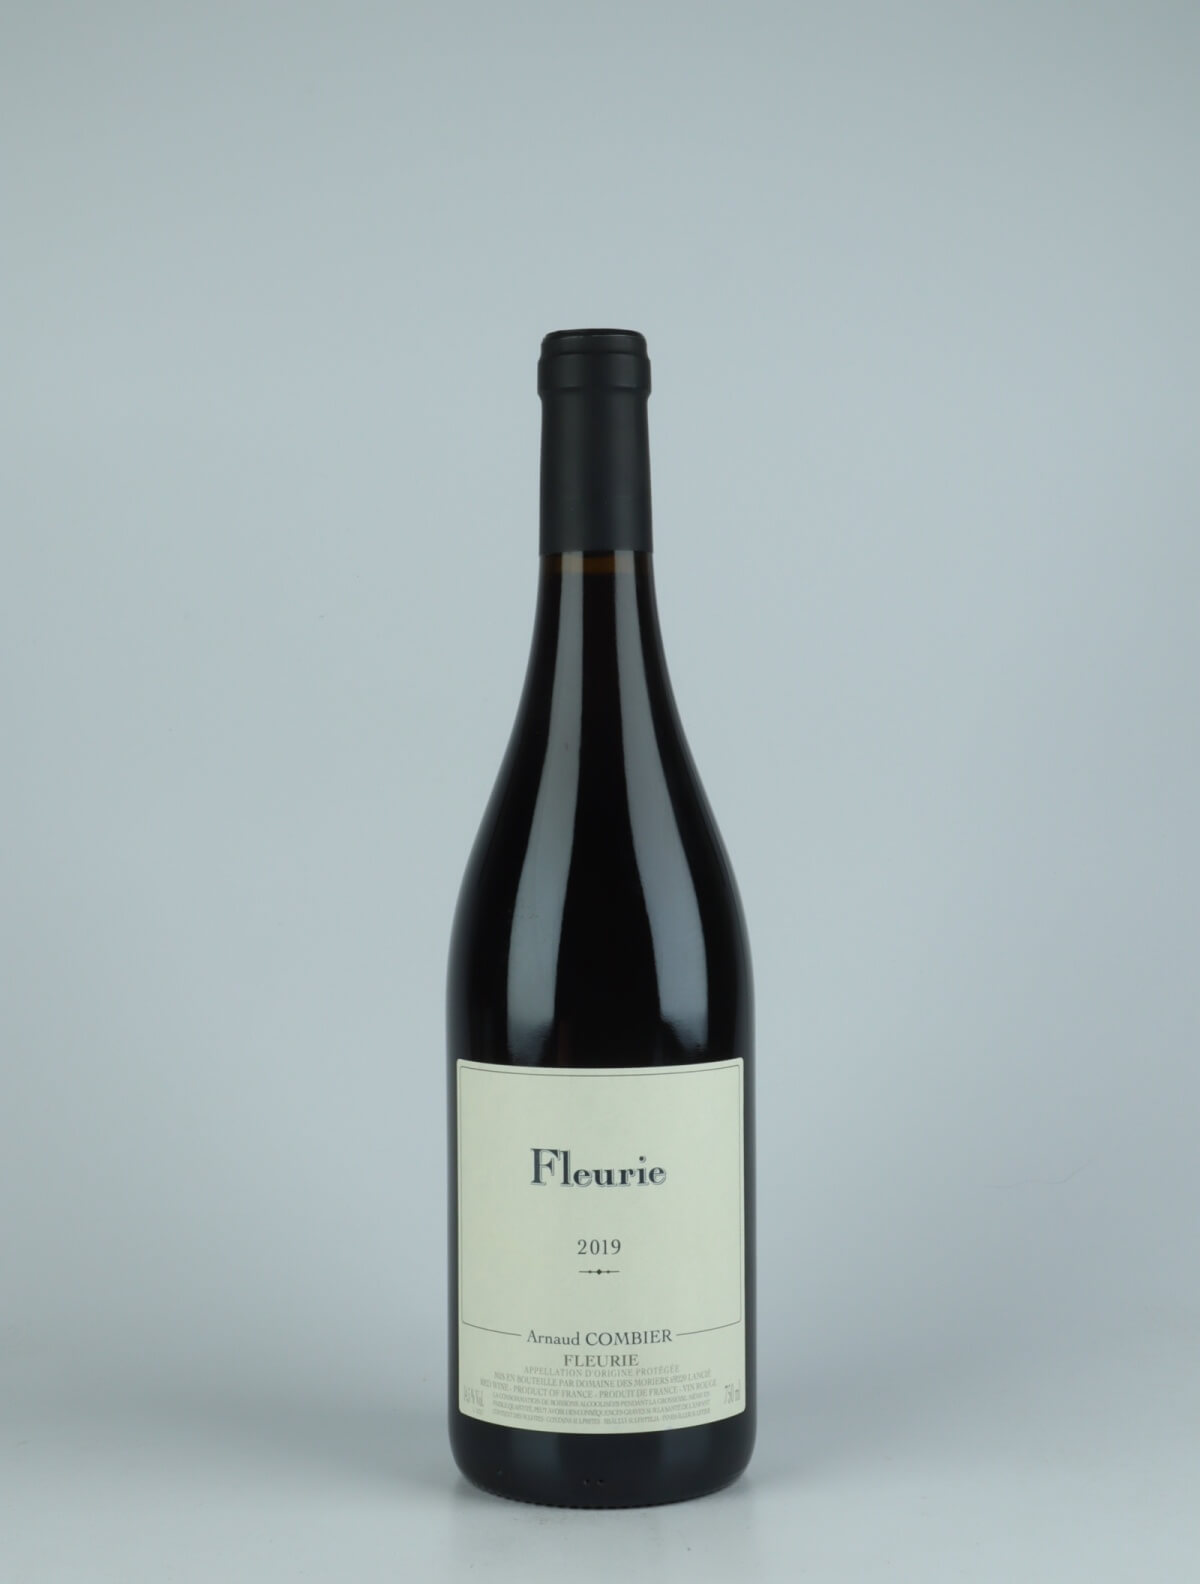 En flaske 2019 Fleurie Rødvin fra Arnaud Combier, Beaujolais i Frankrig